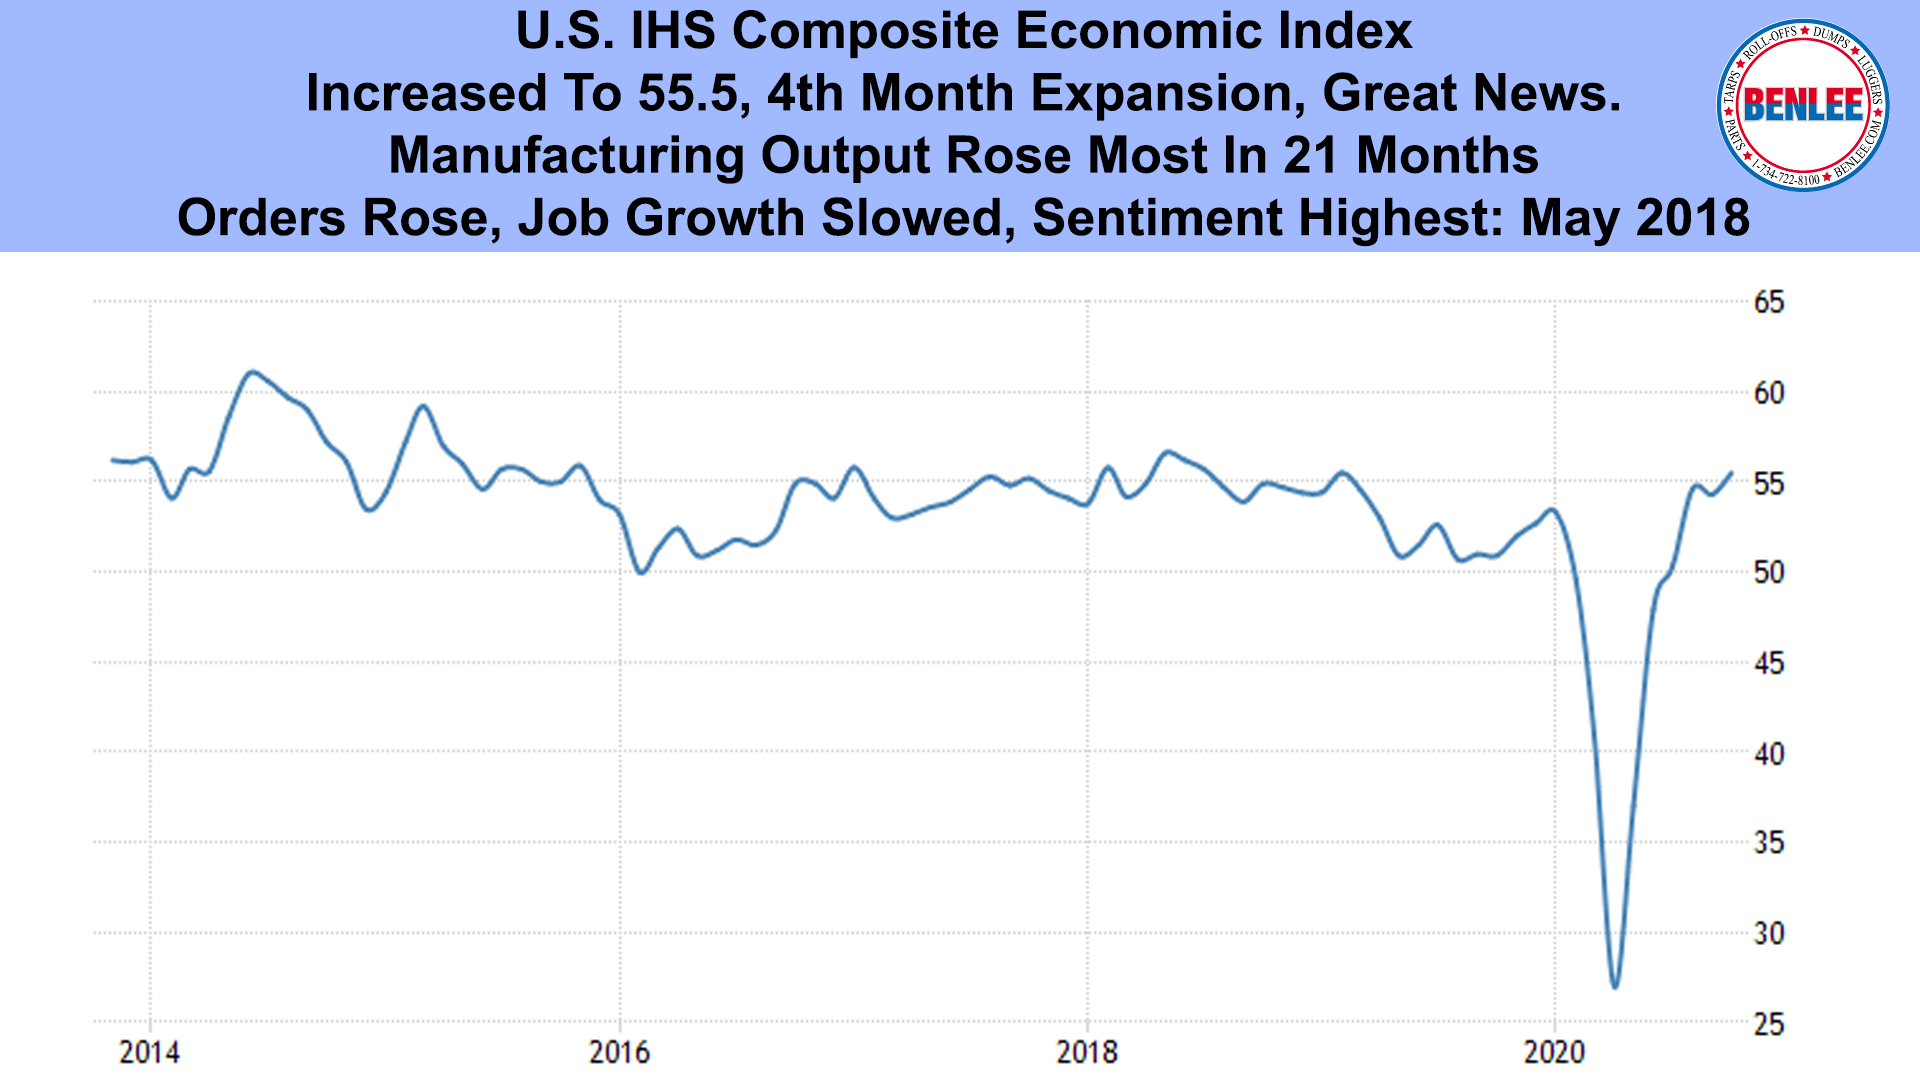 U.S. IHS Composite Economic Index